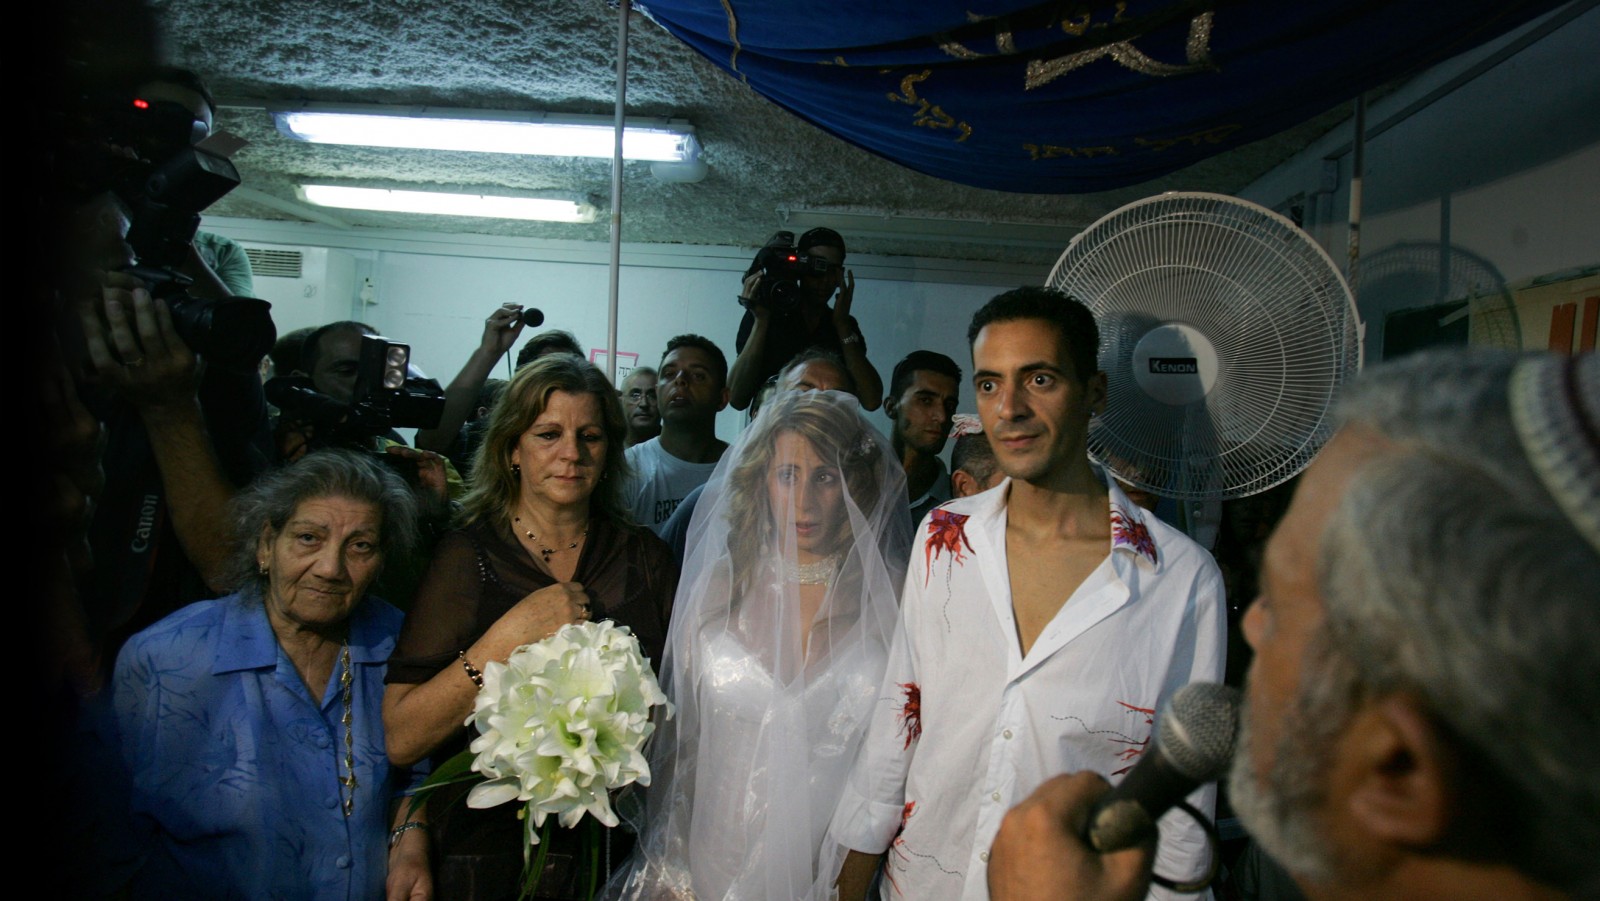 טקס חתונתם של שלומי ומאיה לוגסי במקלט בקרית שמונה, לאחר ששהו בו יותר משבוע. 20 ביולי 2006. צילום: פלאש 90